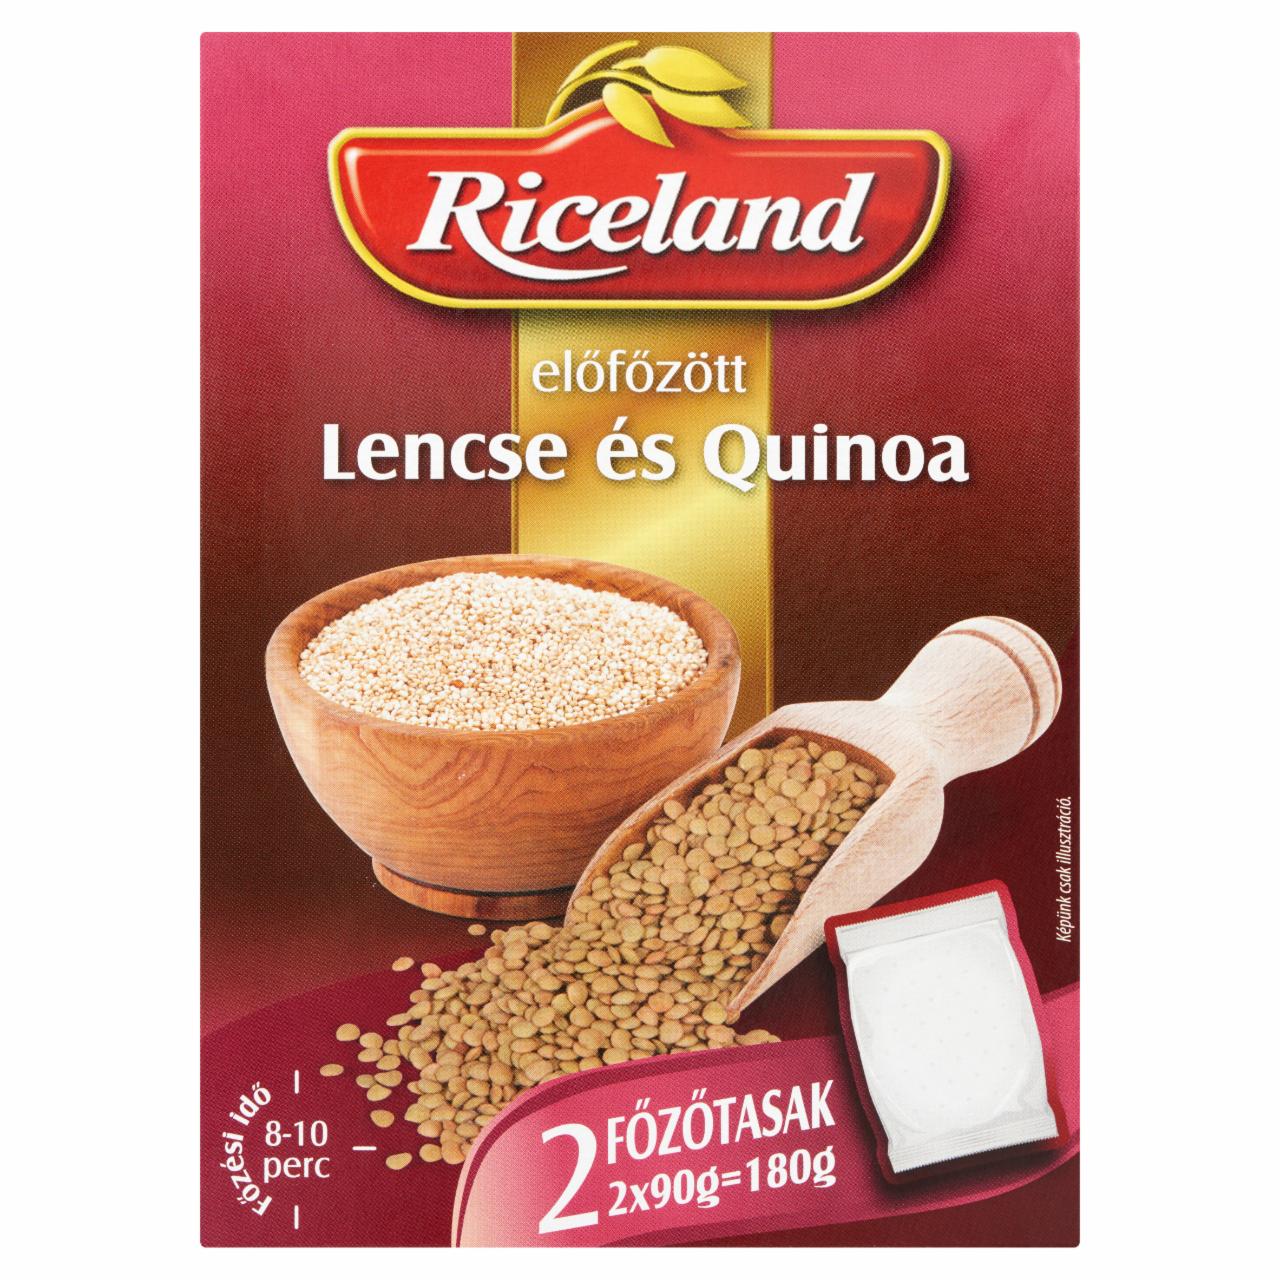 Képek - Riceland előfőzött Lencse és Quinoa 2 x 90 g